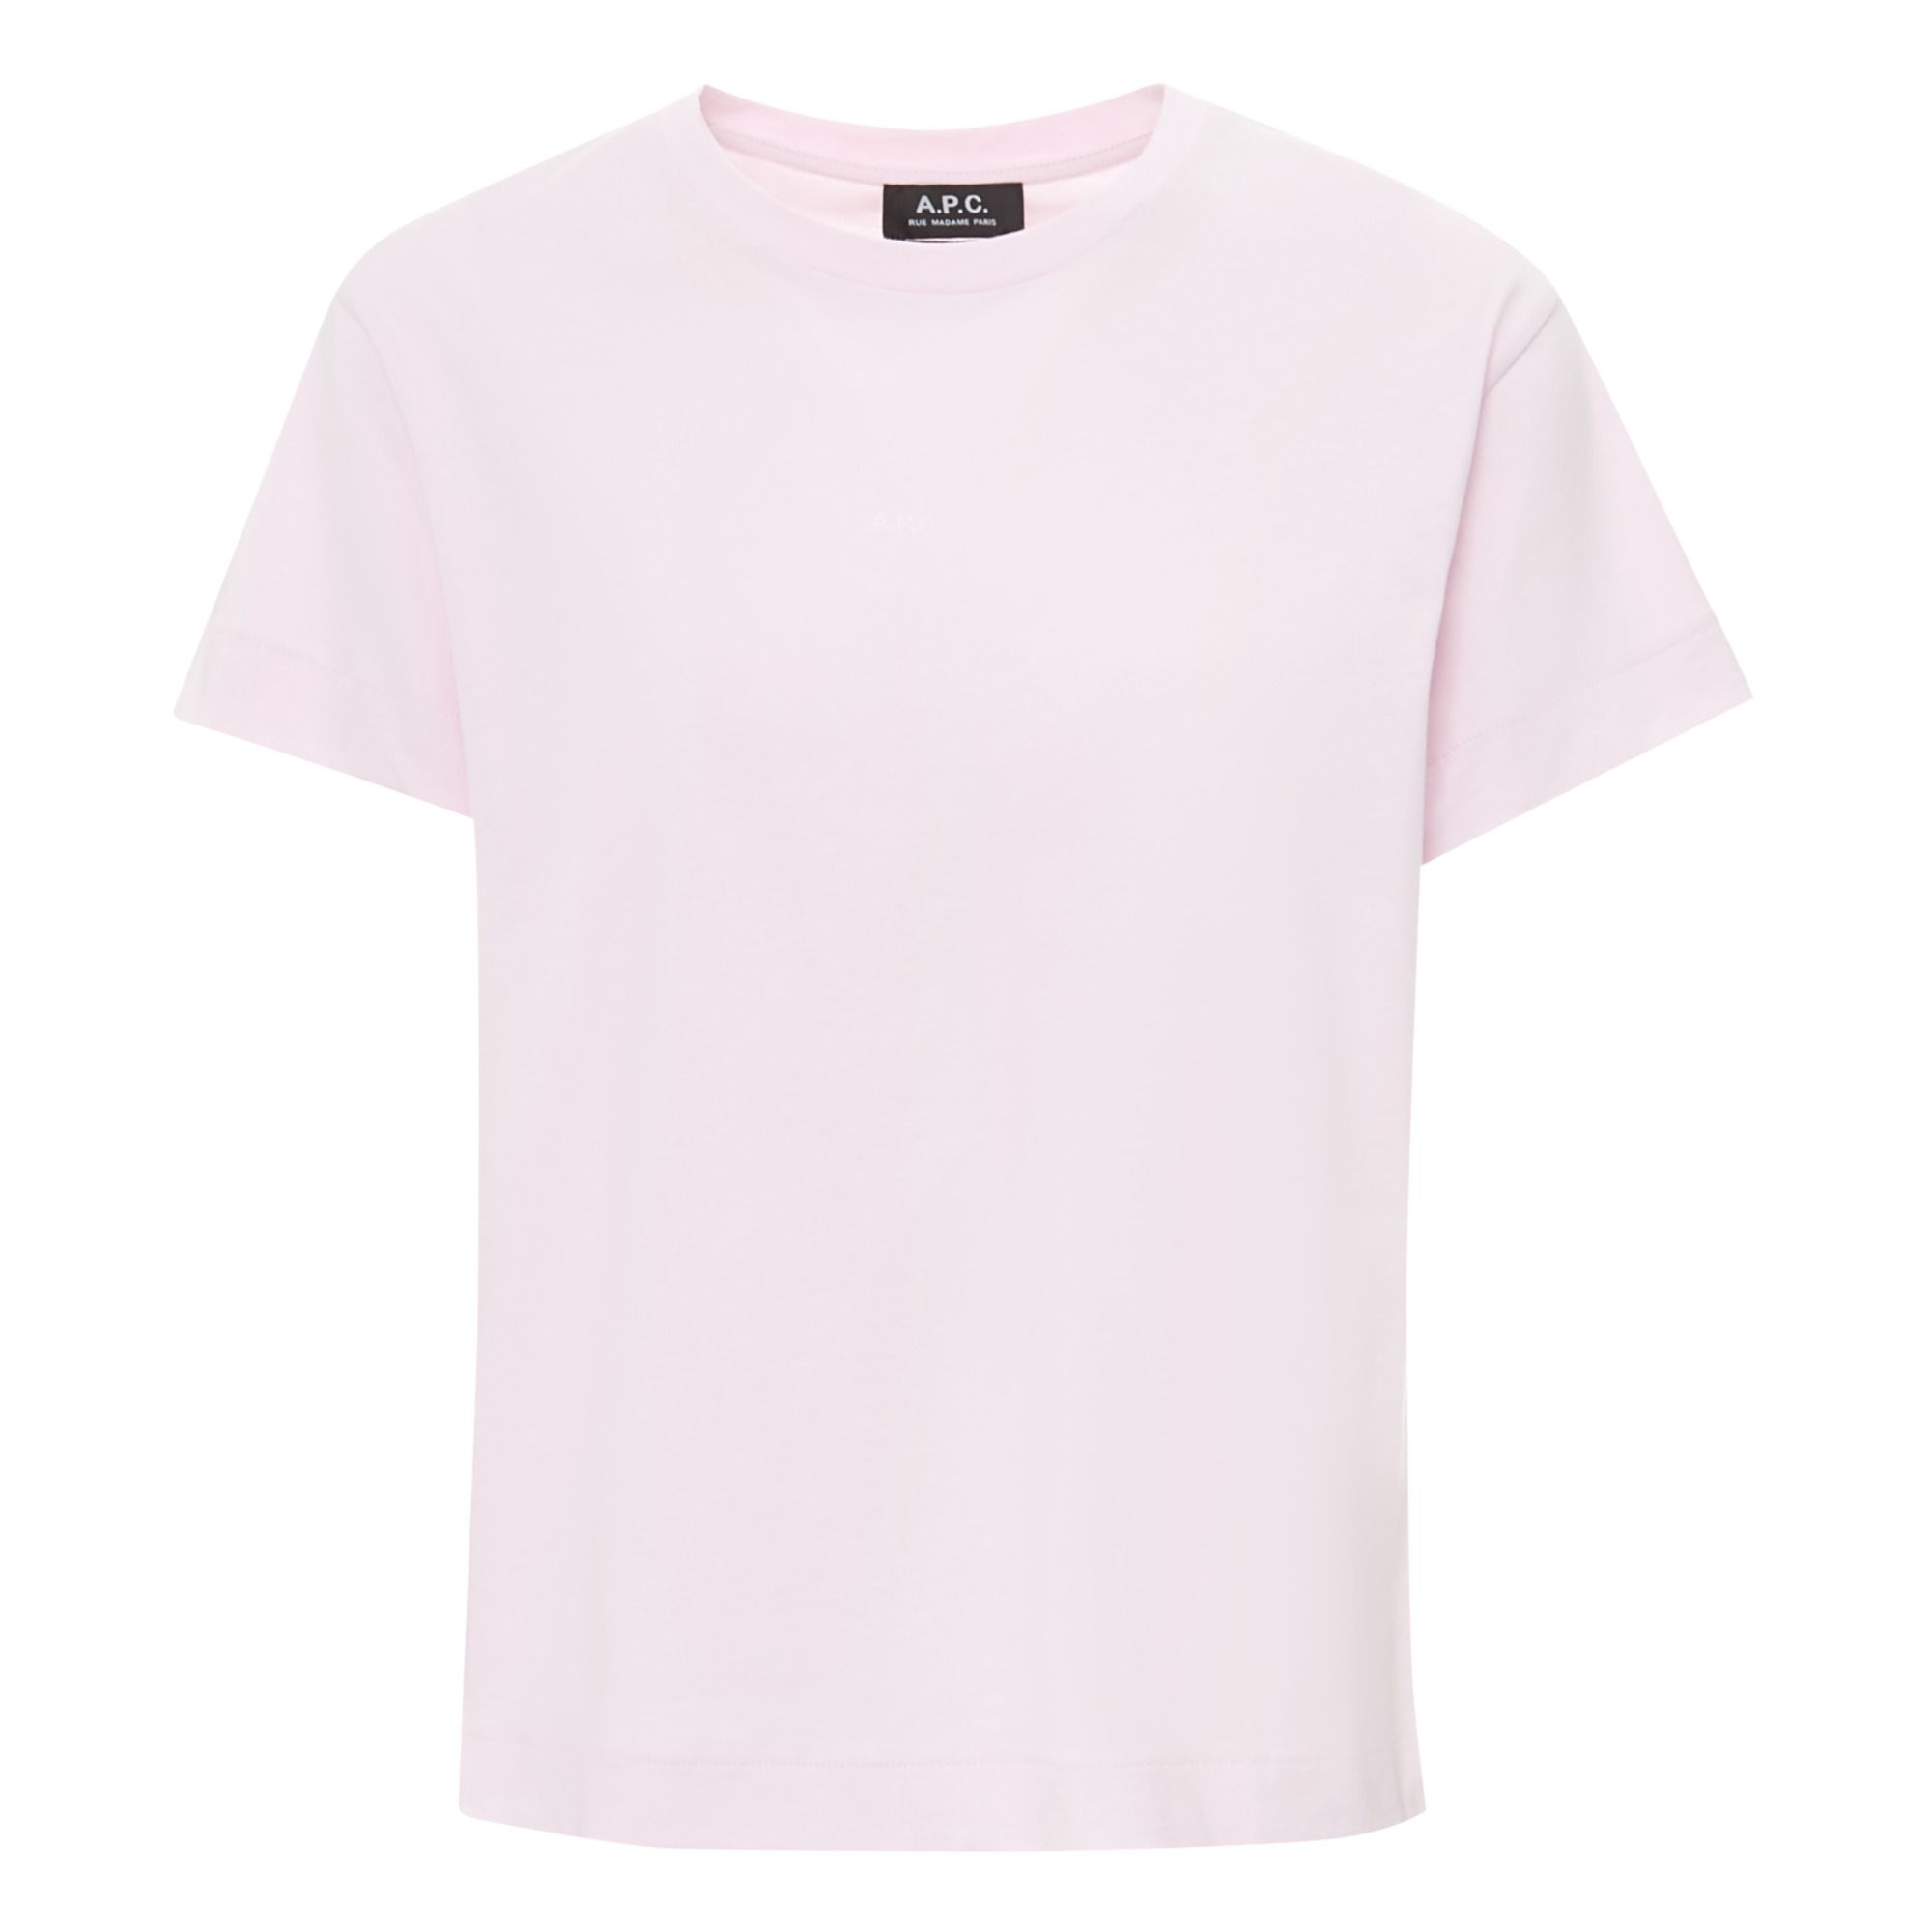 A.P.C. - T-shirt Jade Coton Bio - Femme - Rose pâle